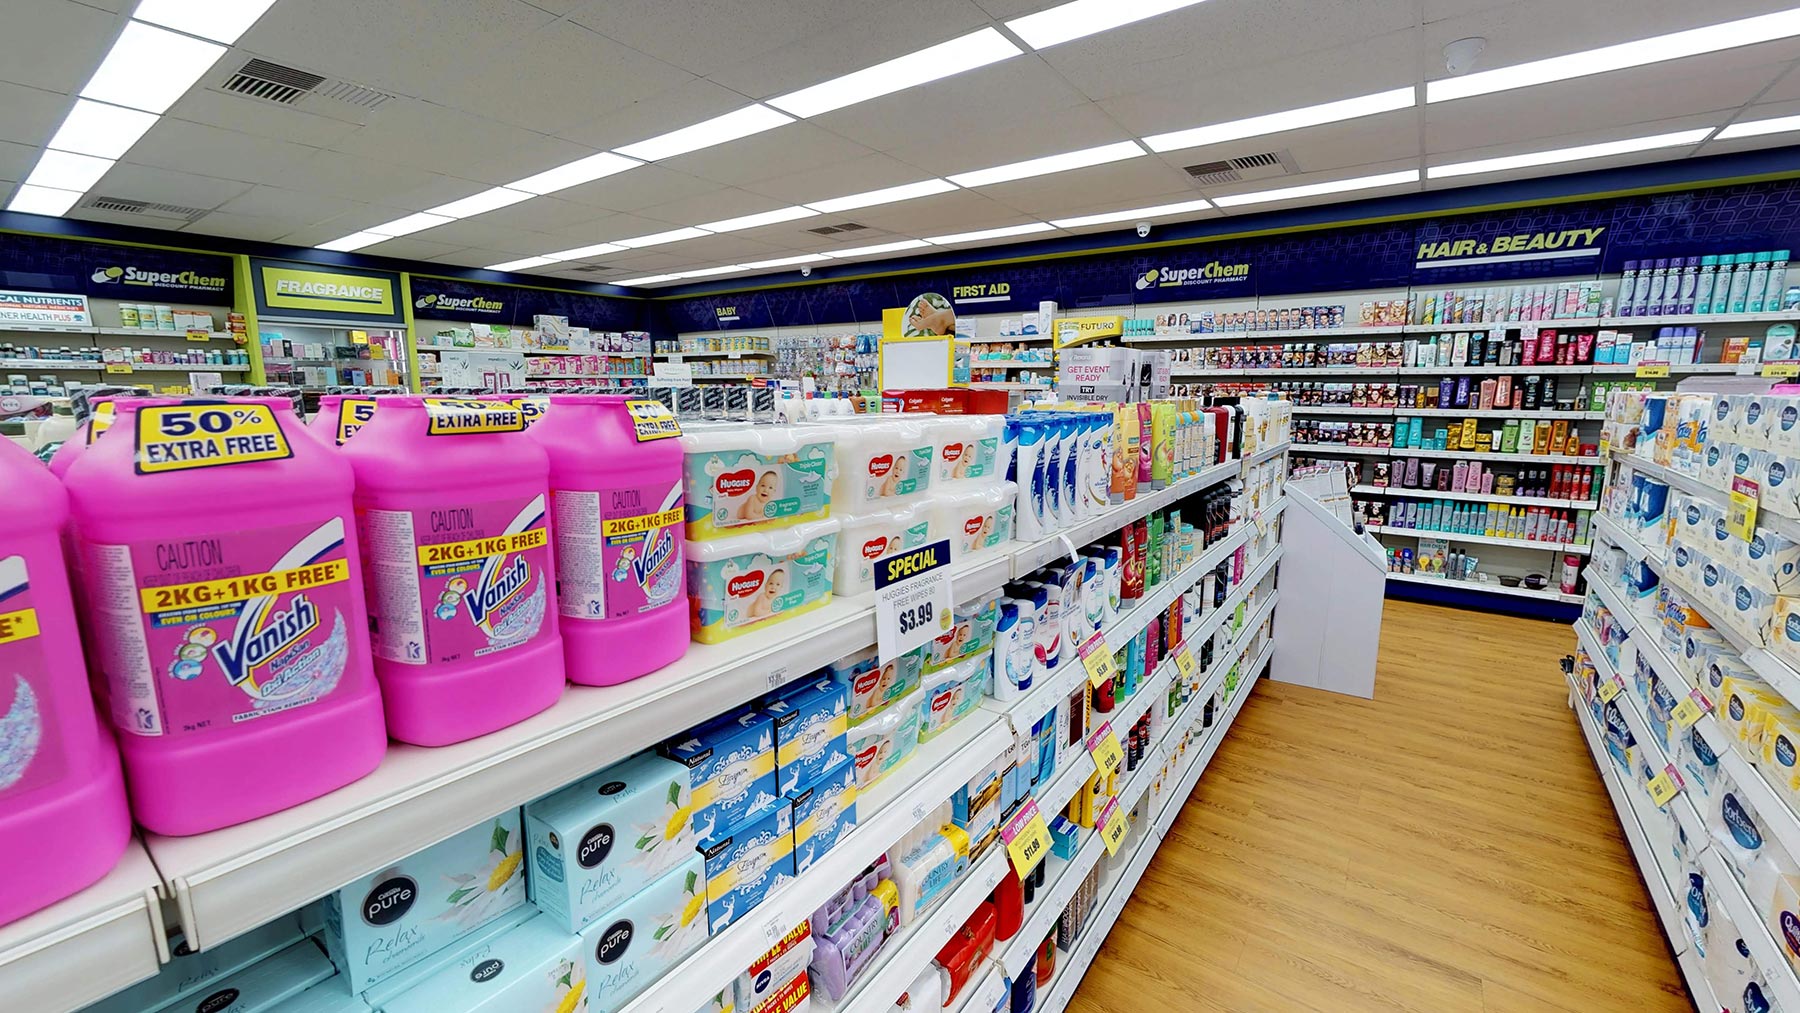 Pharmacy retail area shelving